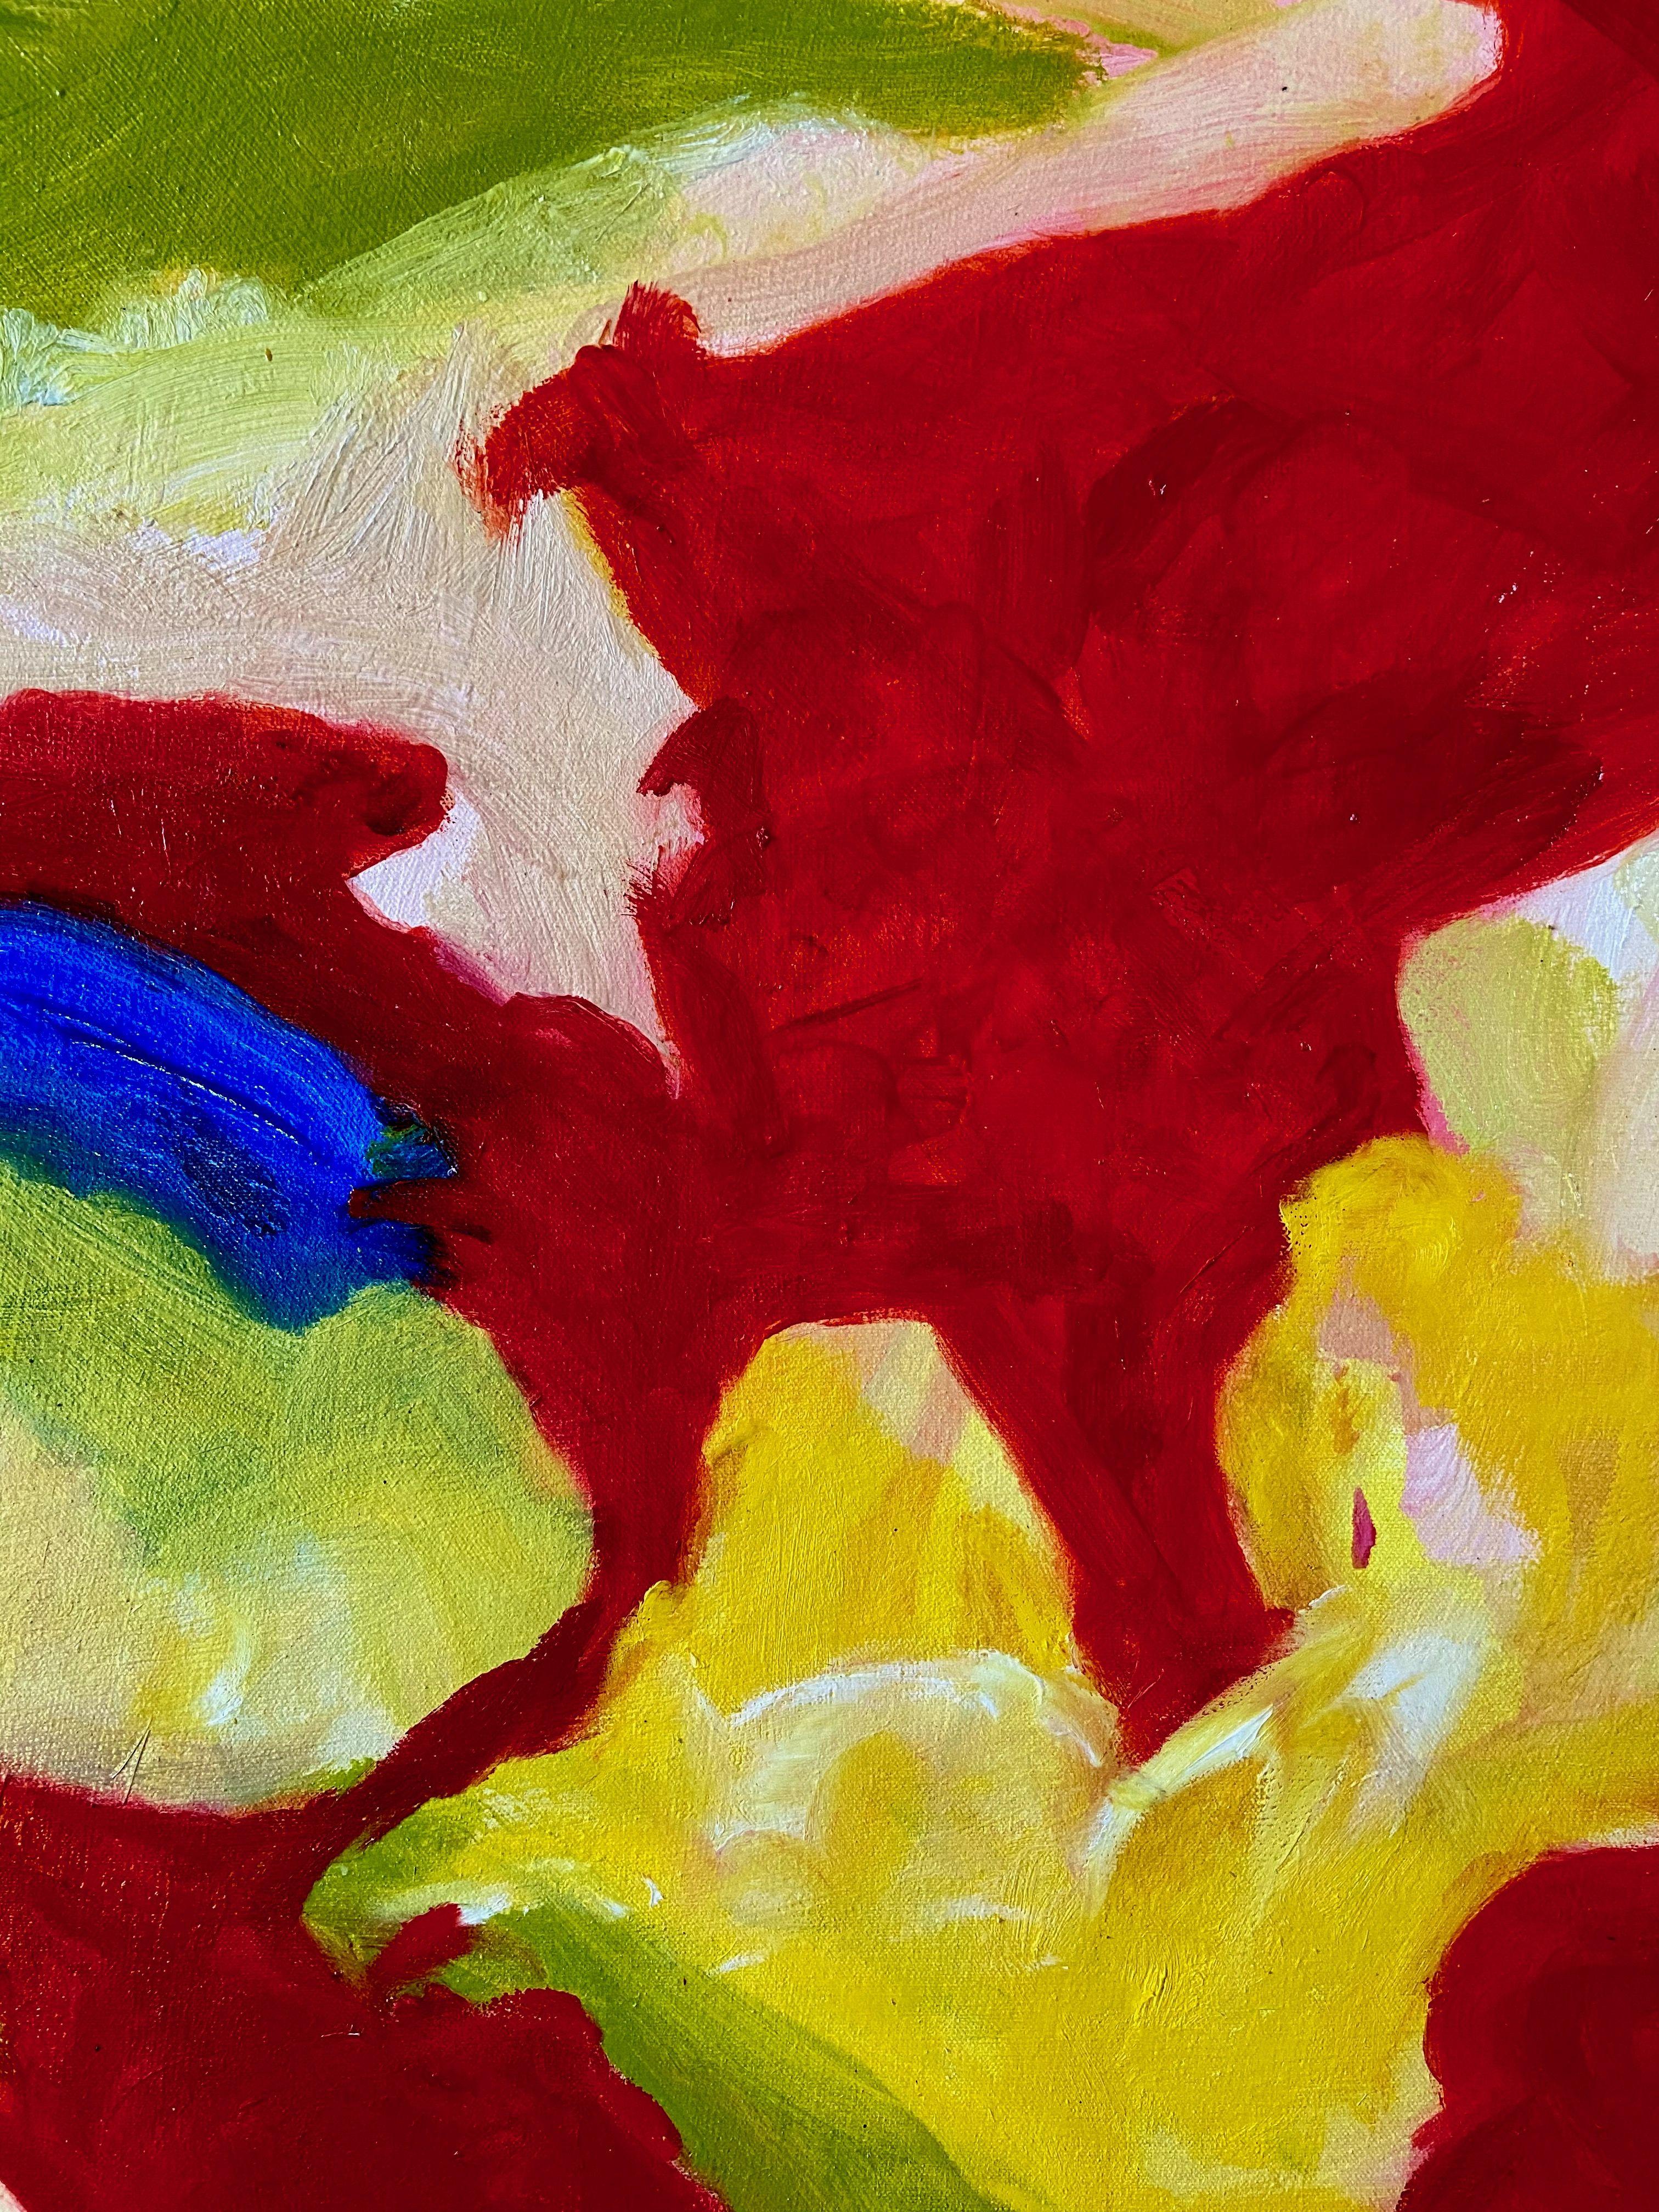 Merveillement III, Peinture, Huile sur Toile - Painting de Steven Miller